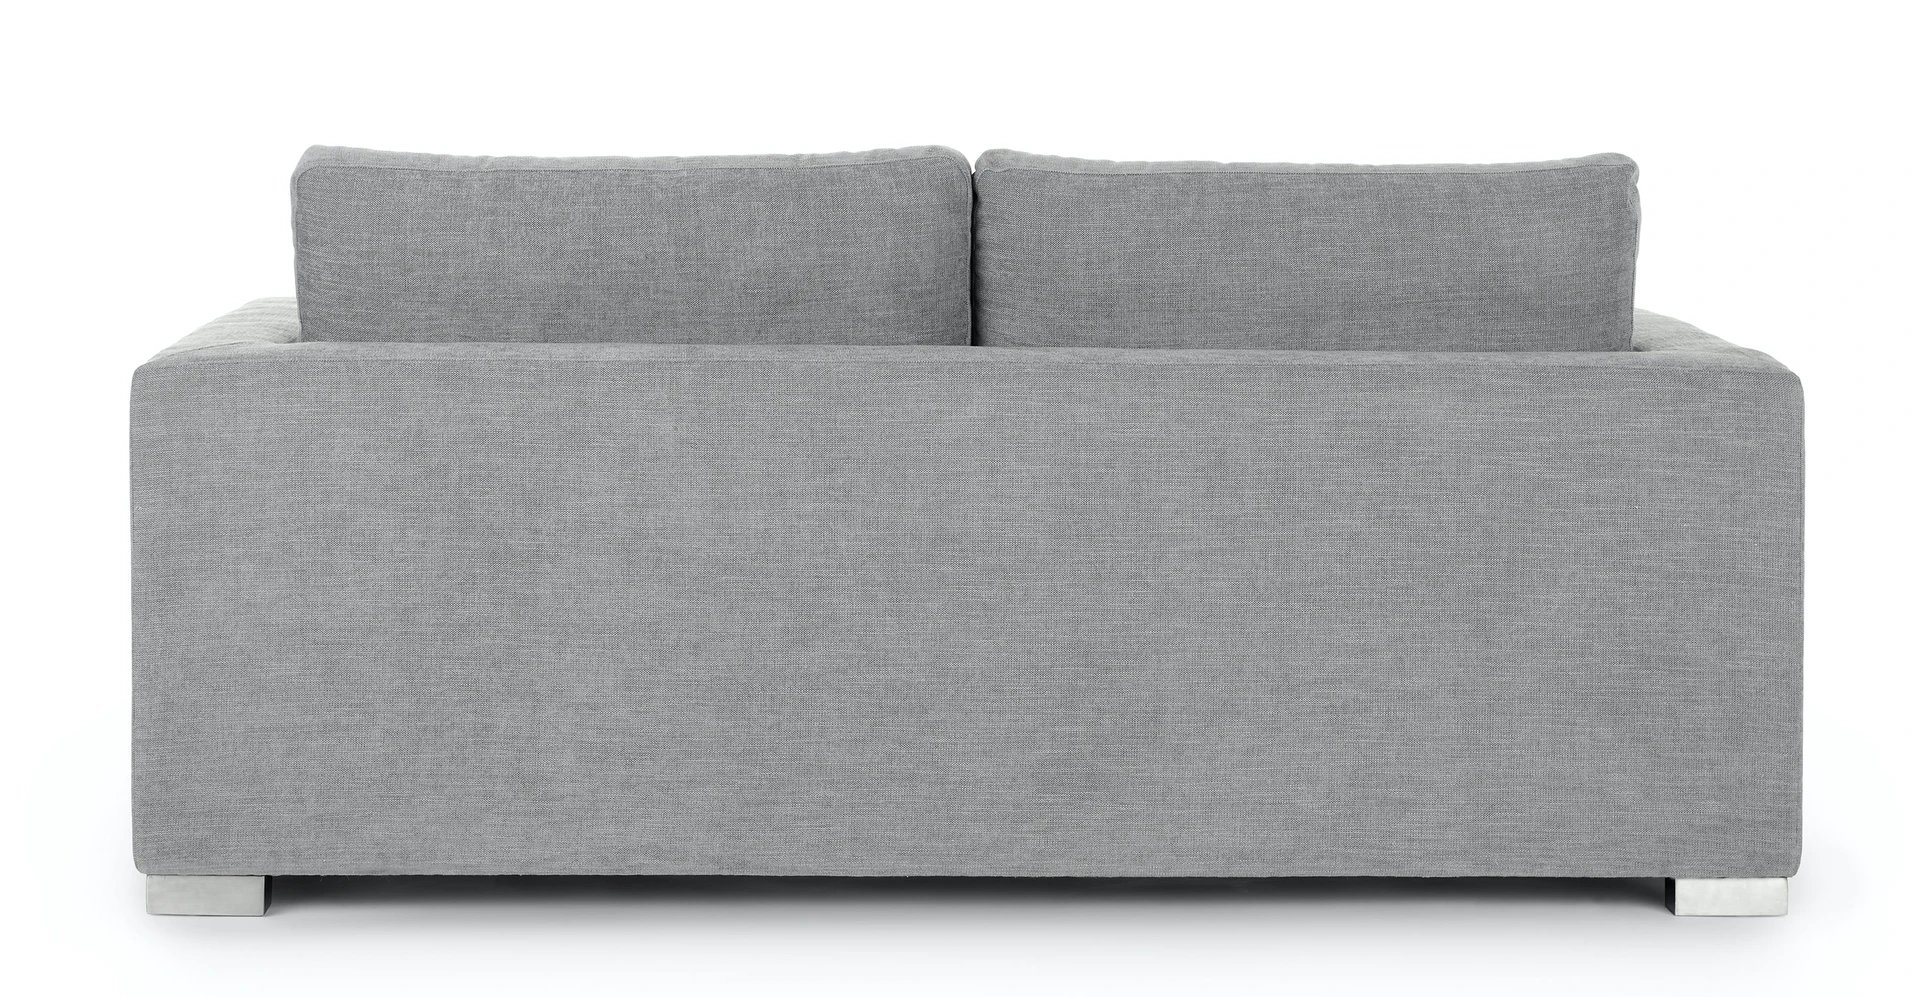 Soma Dawn Gray Sofa Bed - Image 3